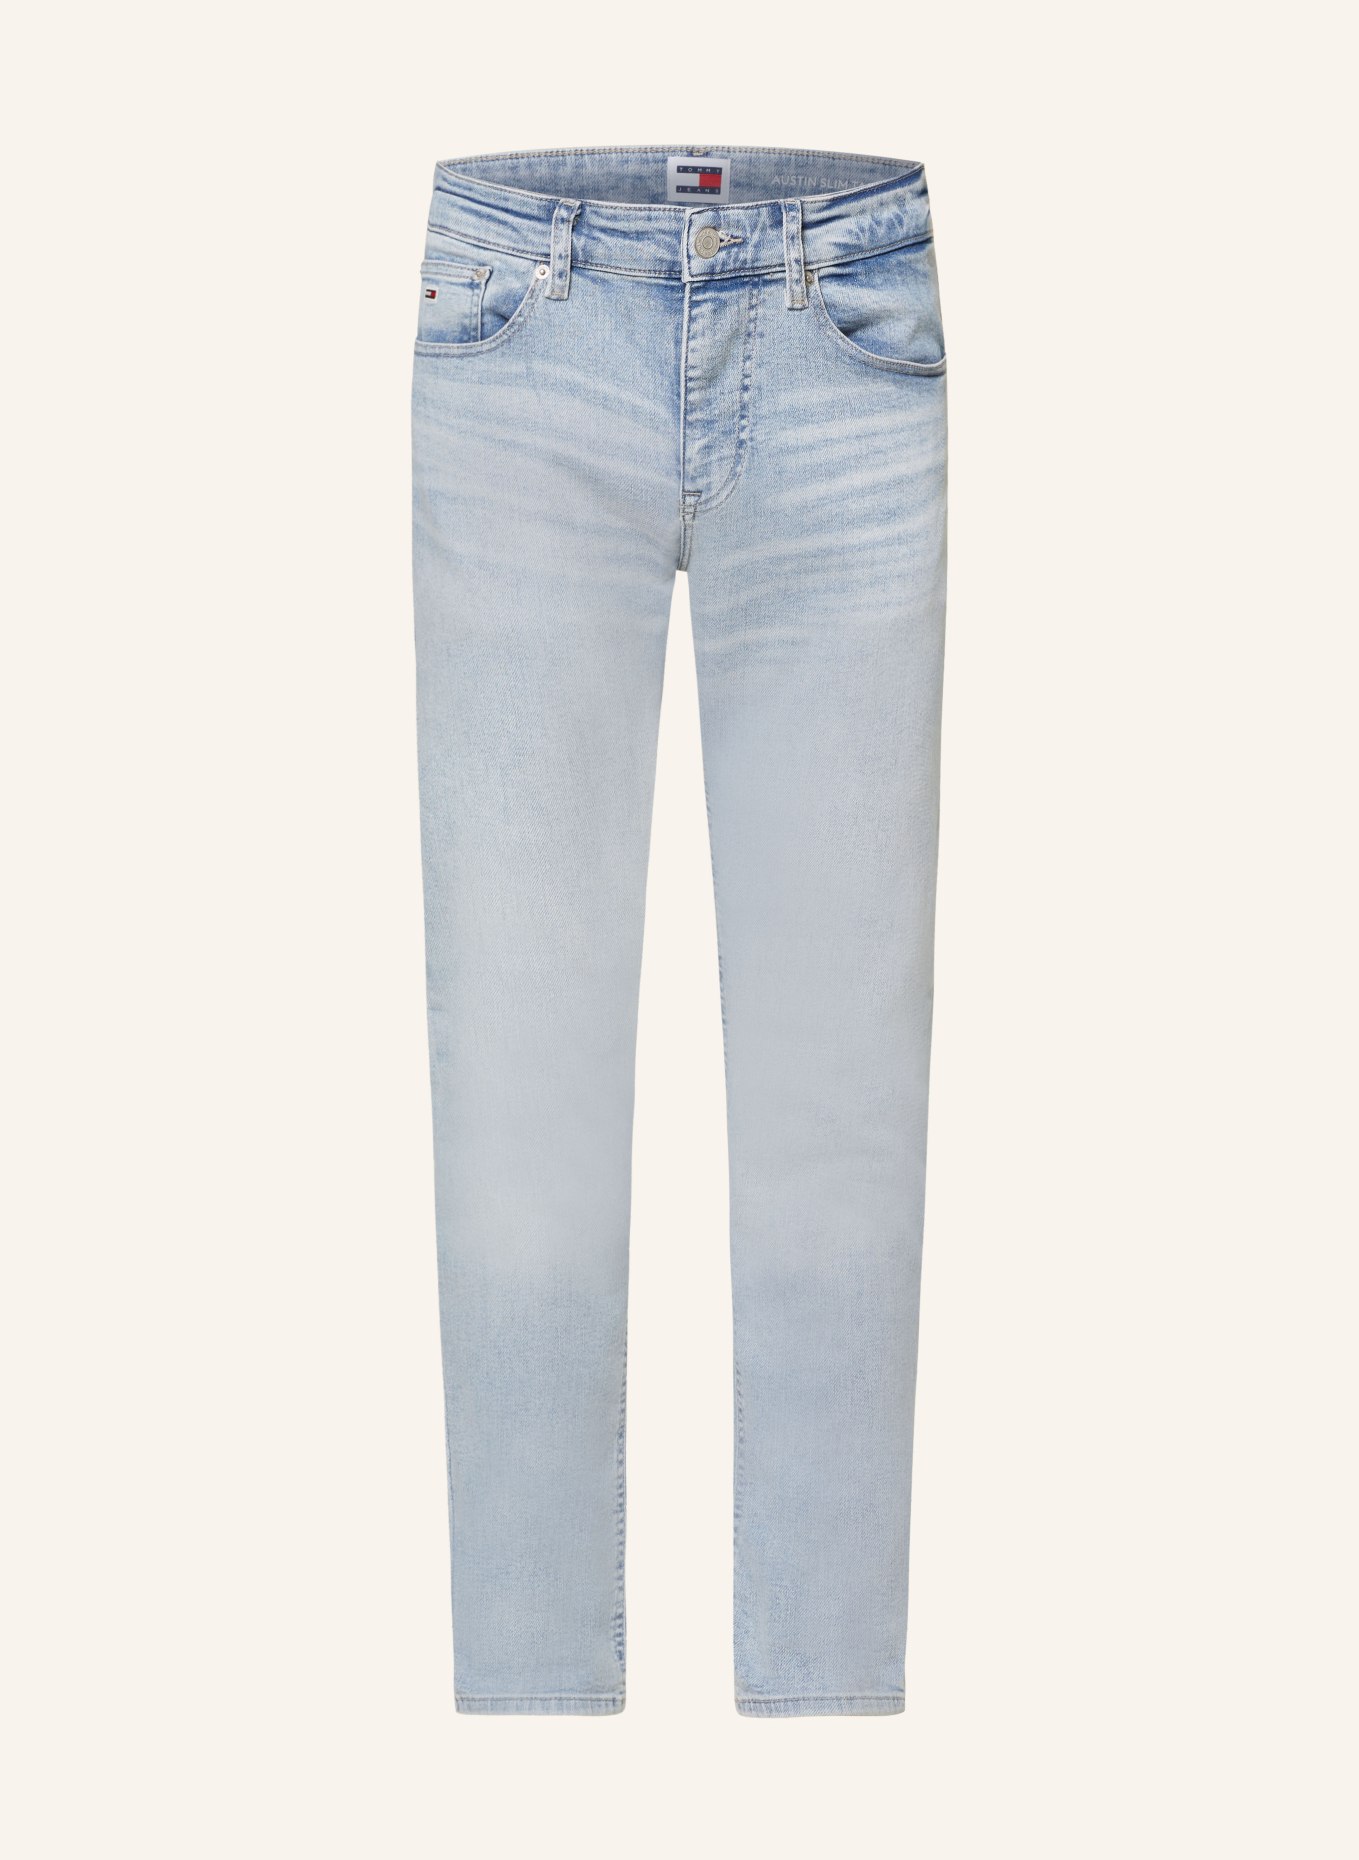 TOMMY JEANS Jeans AUSTIN slim tapered fit, Color: 1AB Denim Light (Image 1)